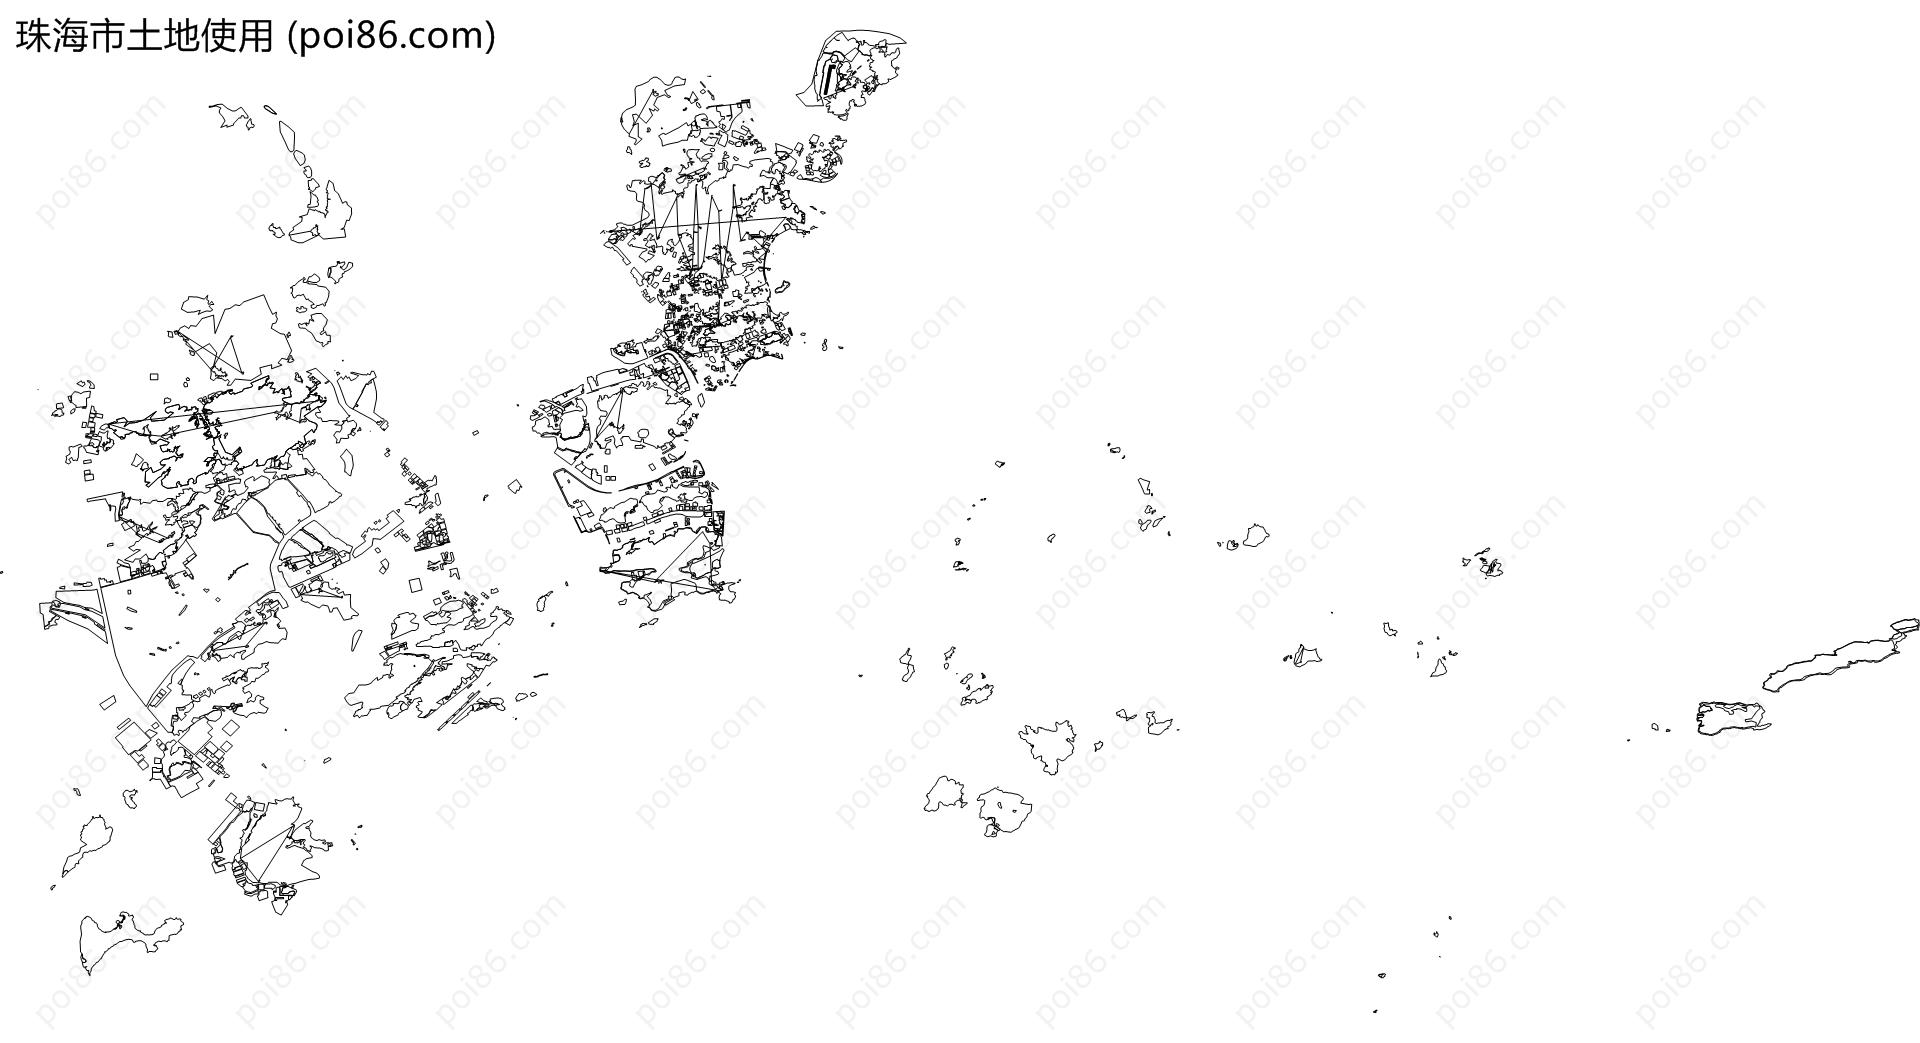 珠海市土地使用地图